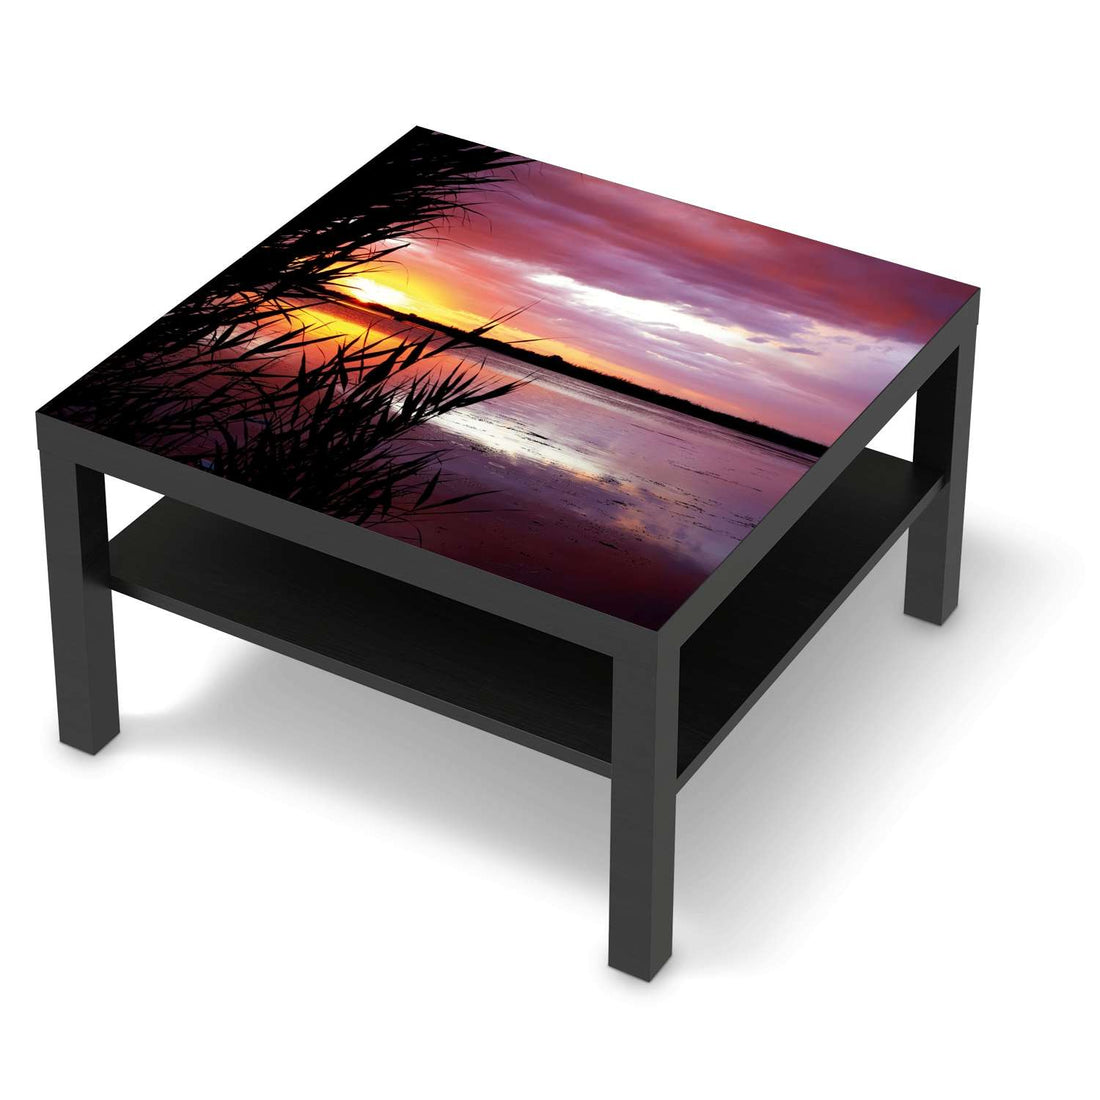 Selbstklebende Folie Dream away - IKEA Lack Tisch 78x78 cm - schwarz